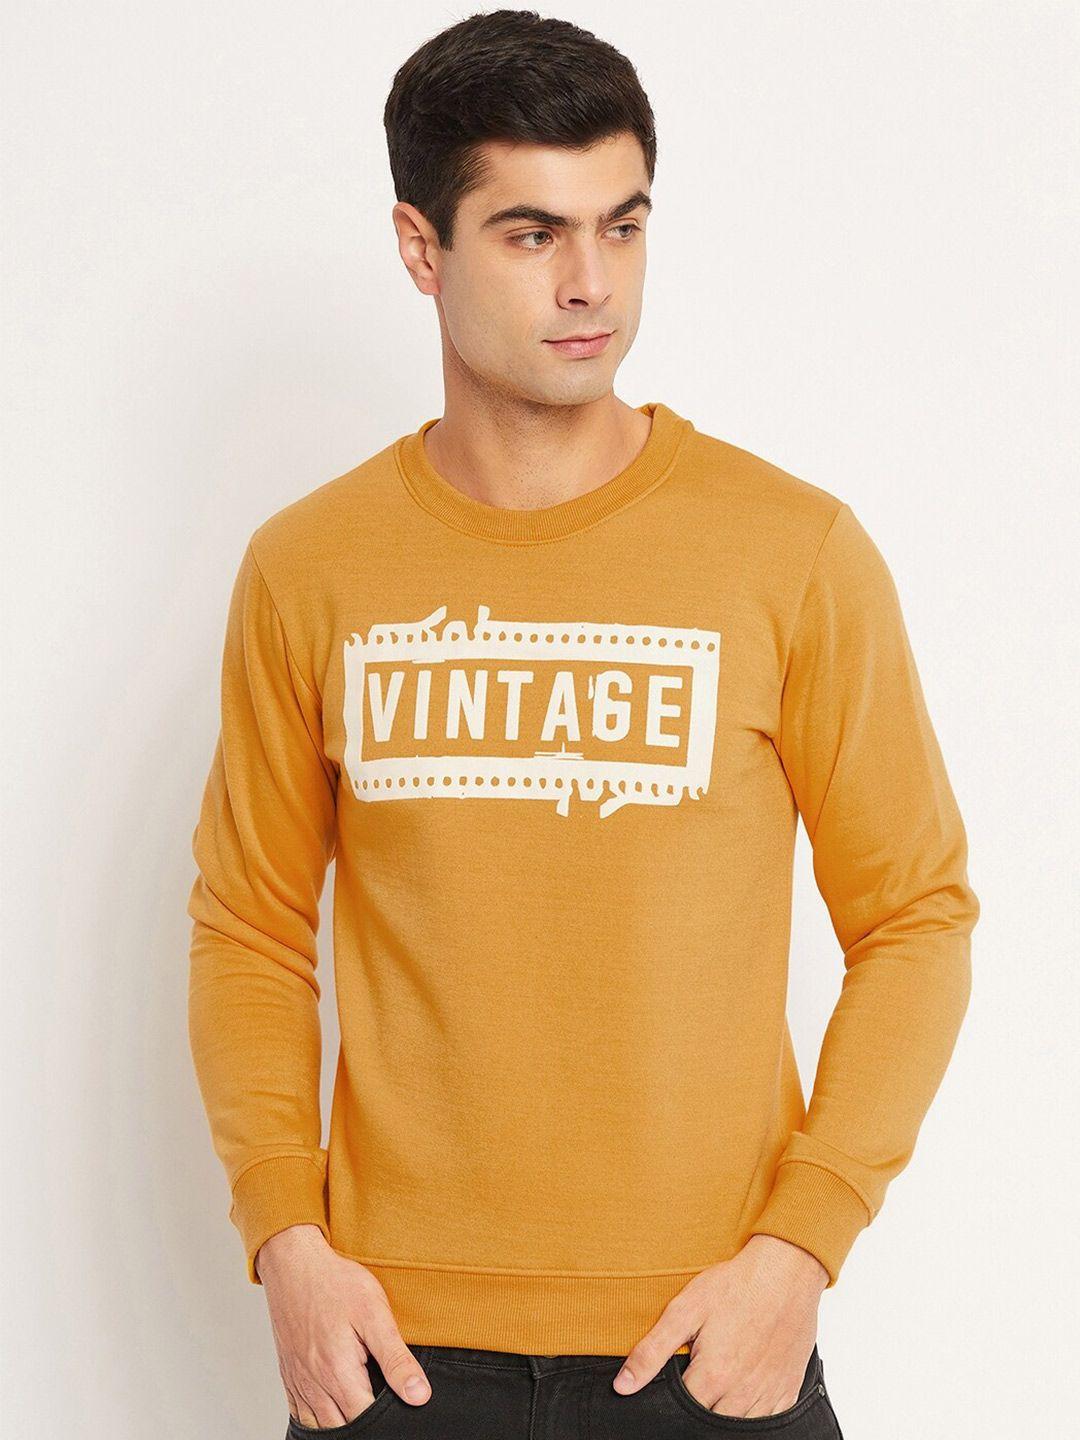 strop typographic printed fleece sweatshirt